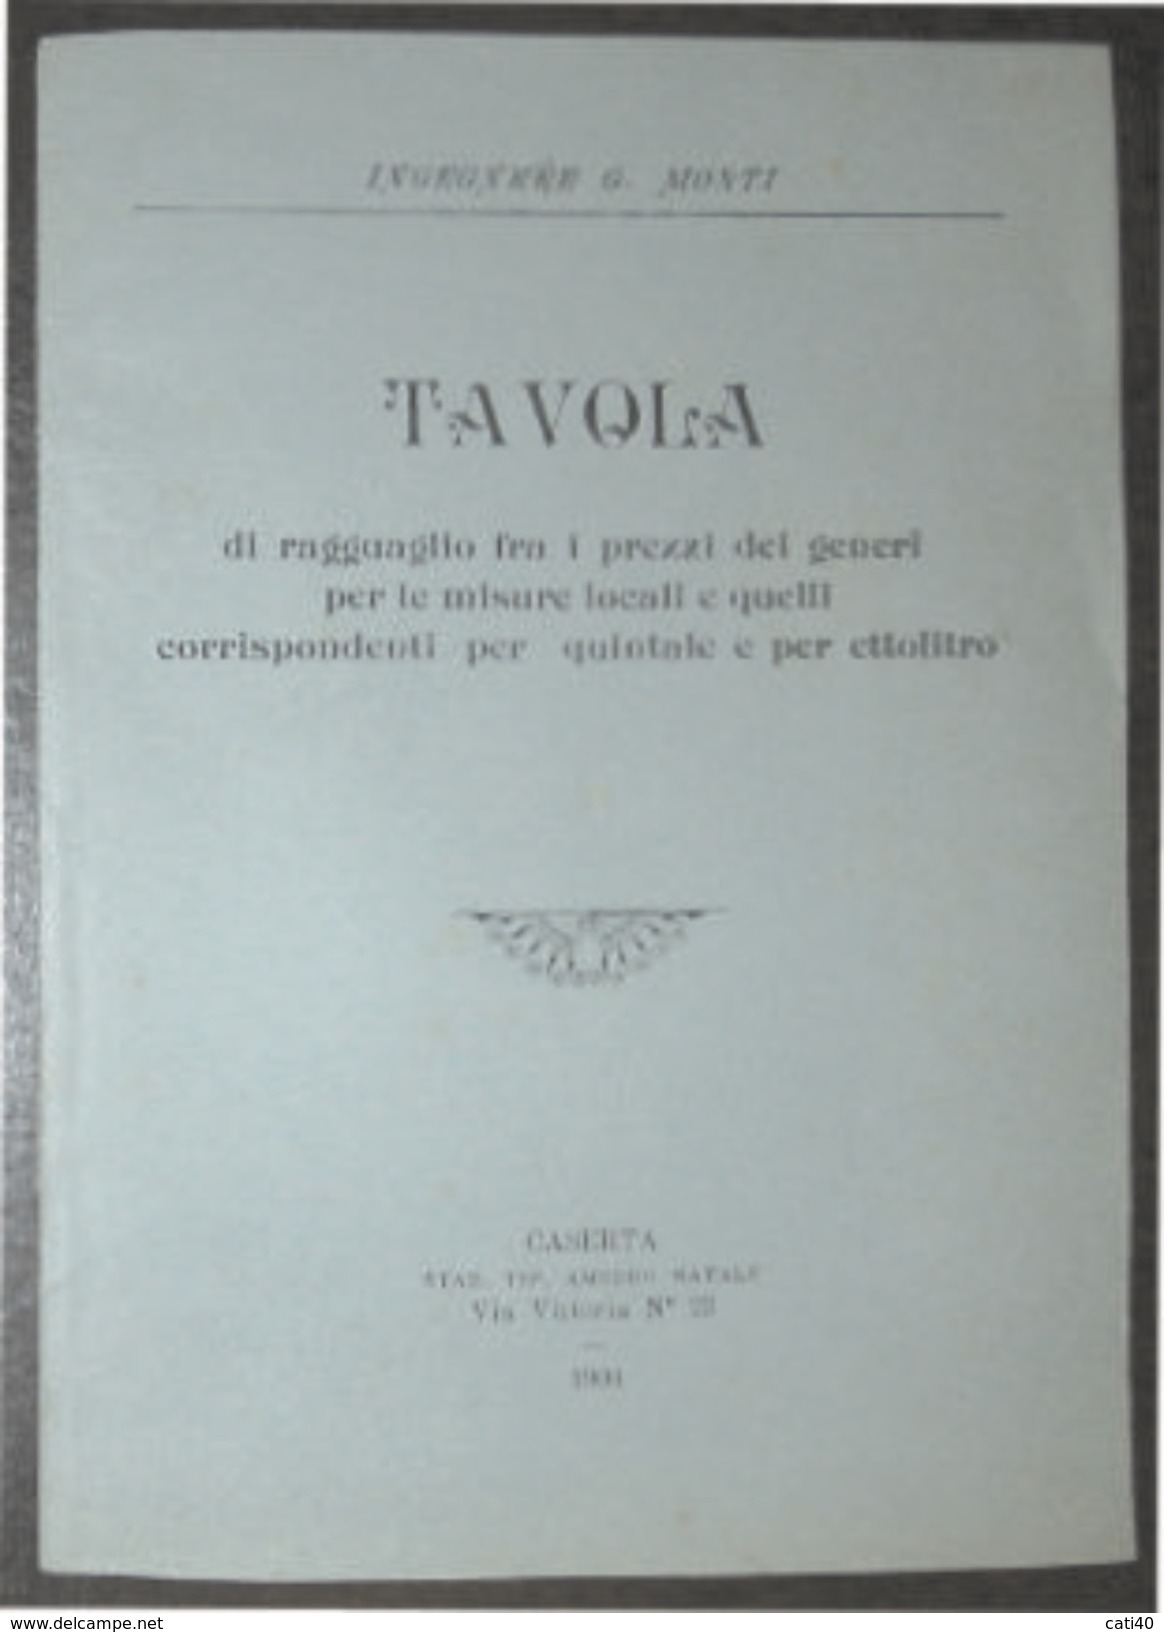 COMMERCIO  TAVOLA  UNIFICAZIONE  PREZZI   PER QUINTALE ED ETTOLITRO - CASERTA 1904 TIP.AMEDEO NATALE - Scientific Texts